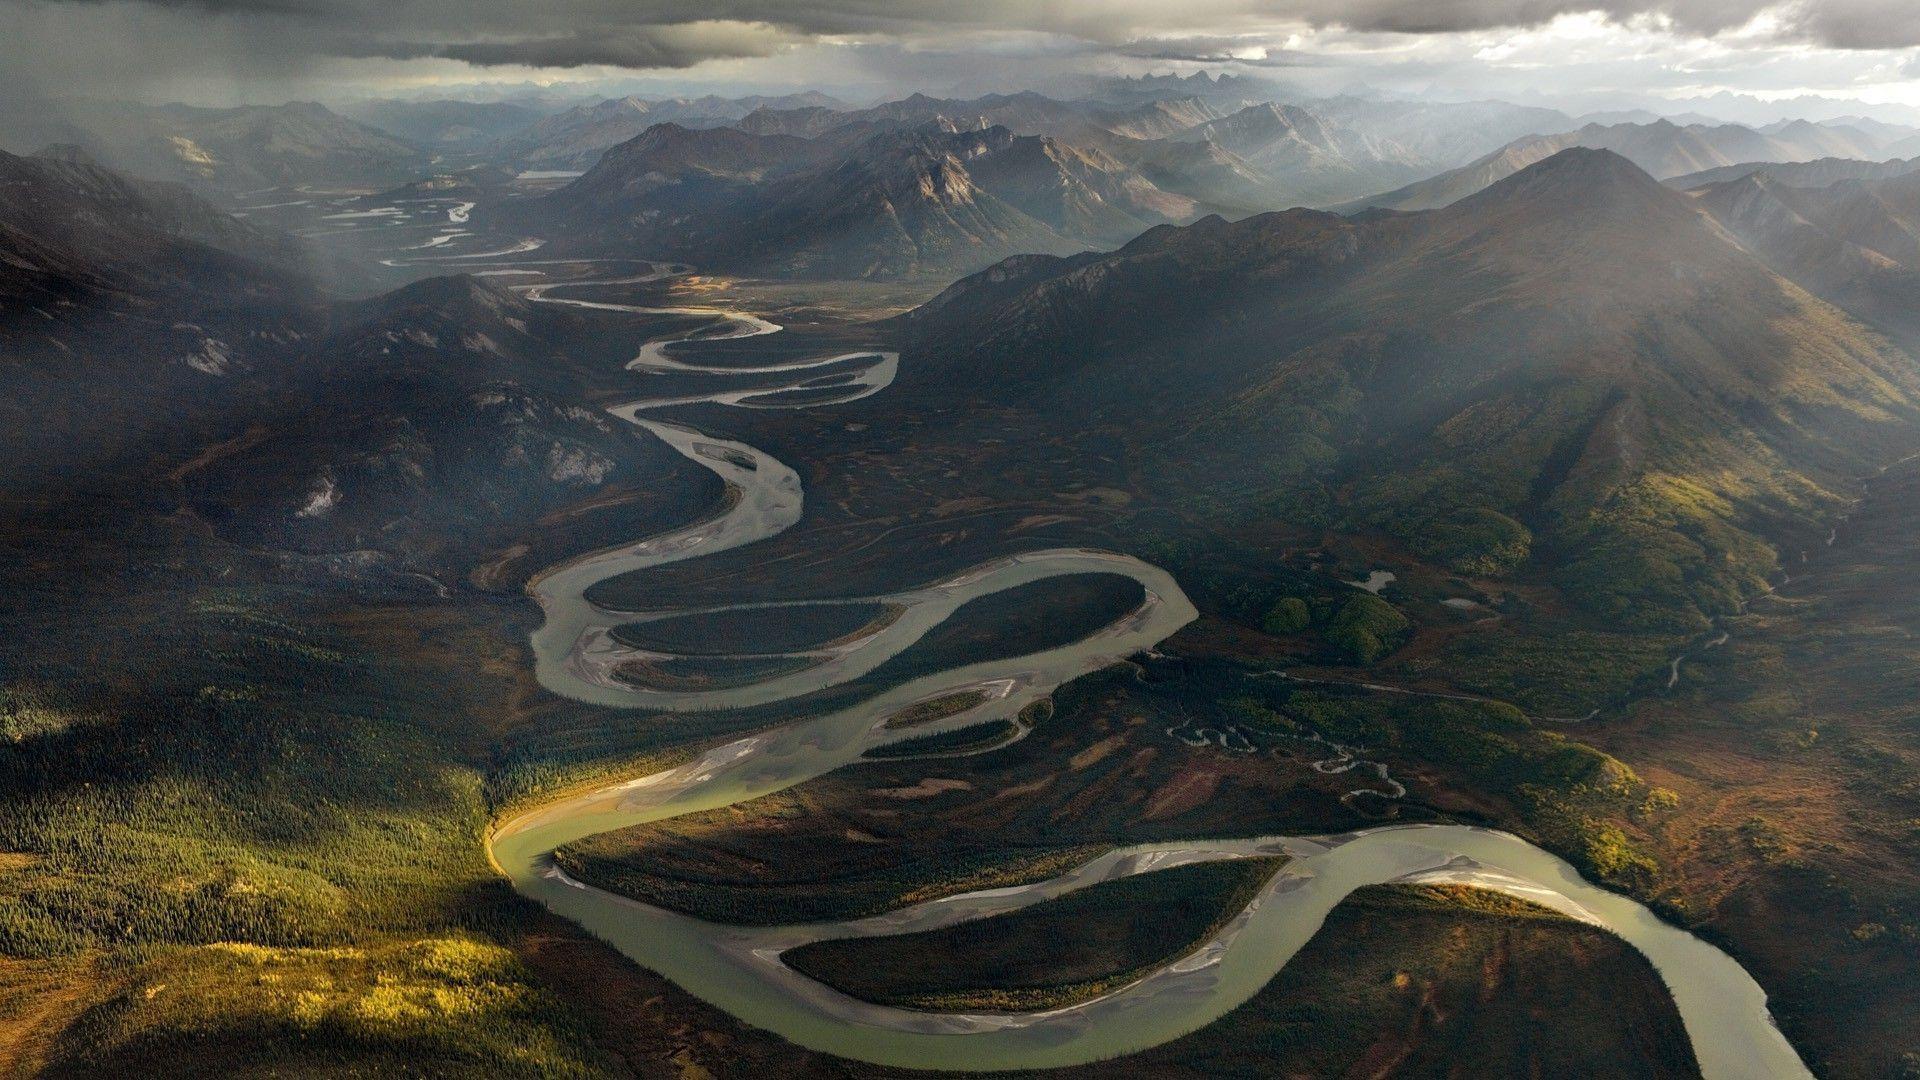 Alatna river, Alaska Wallpaper #